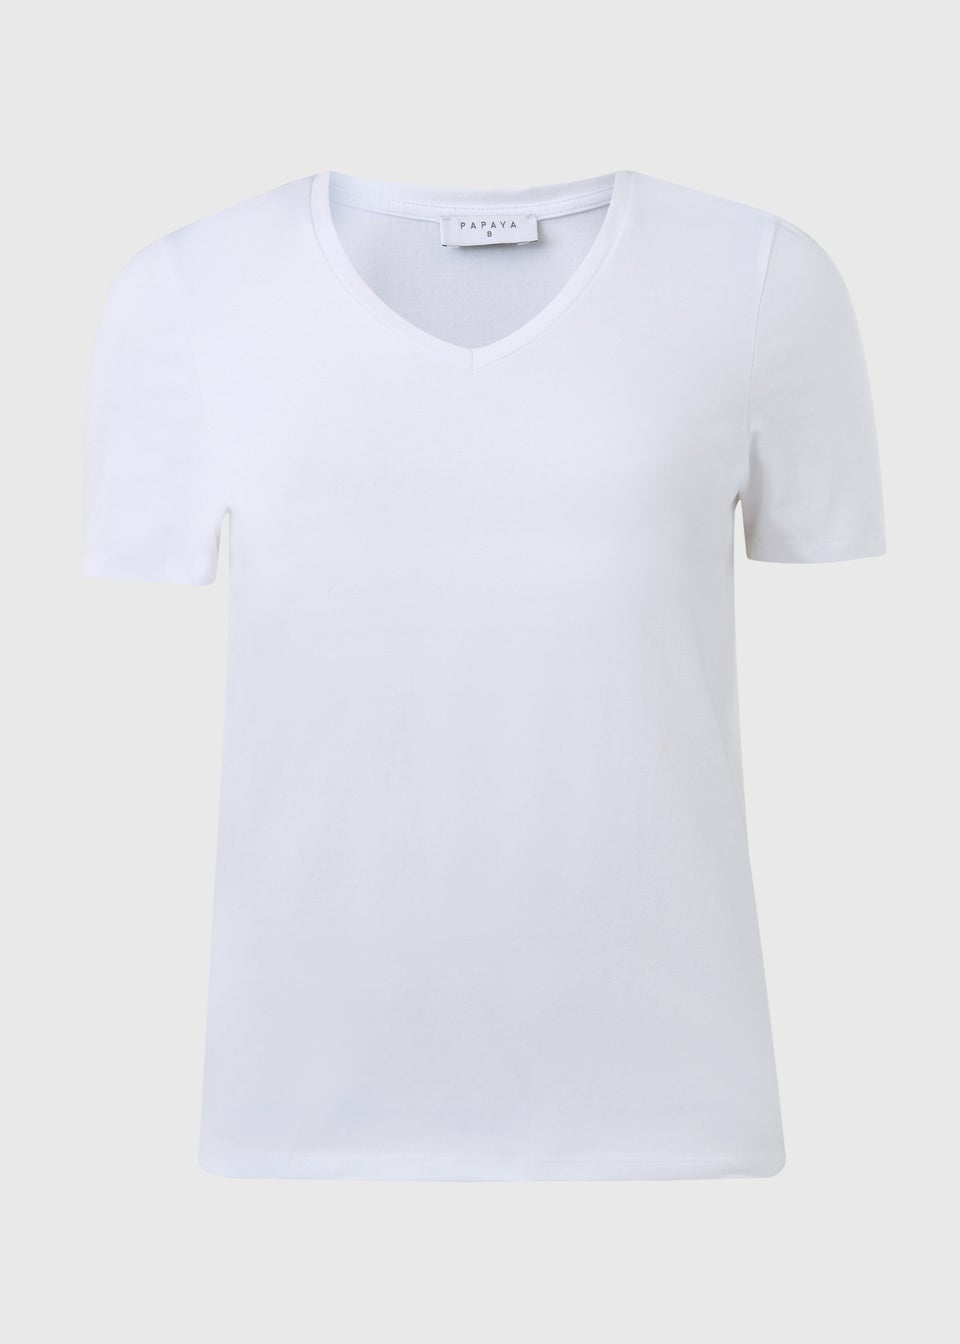 White V Neck Short Sleeve T Shirt